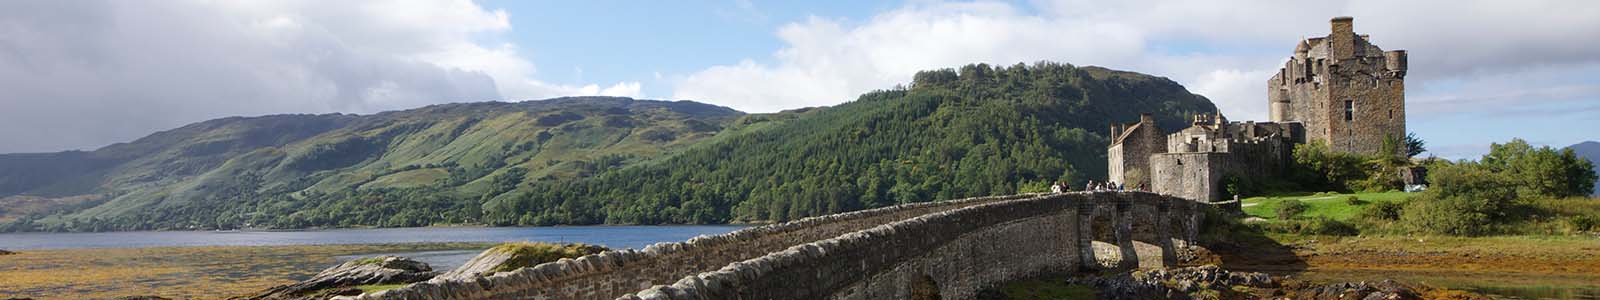 De mooiste kastelen van Schotland